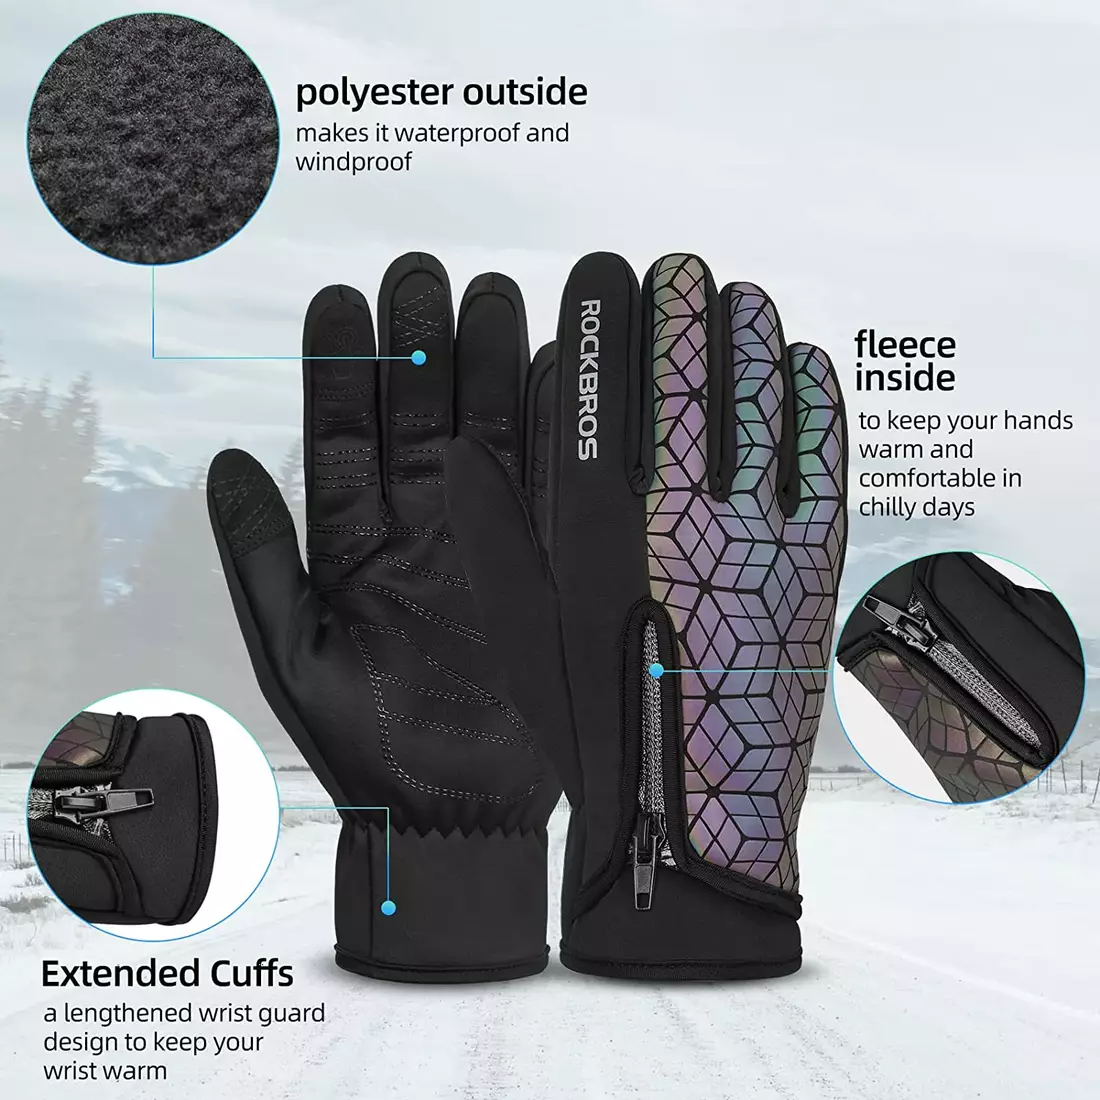 Rockbros mănuși de ciclism softshell de iarnă, cameleon 16140778007